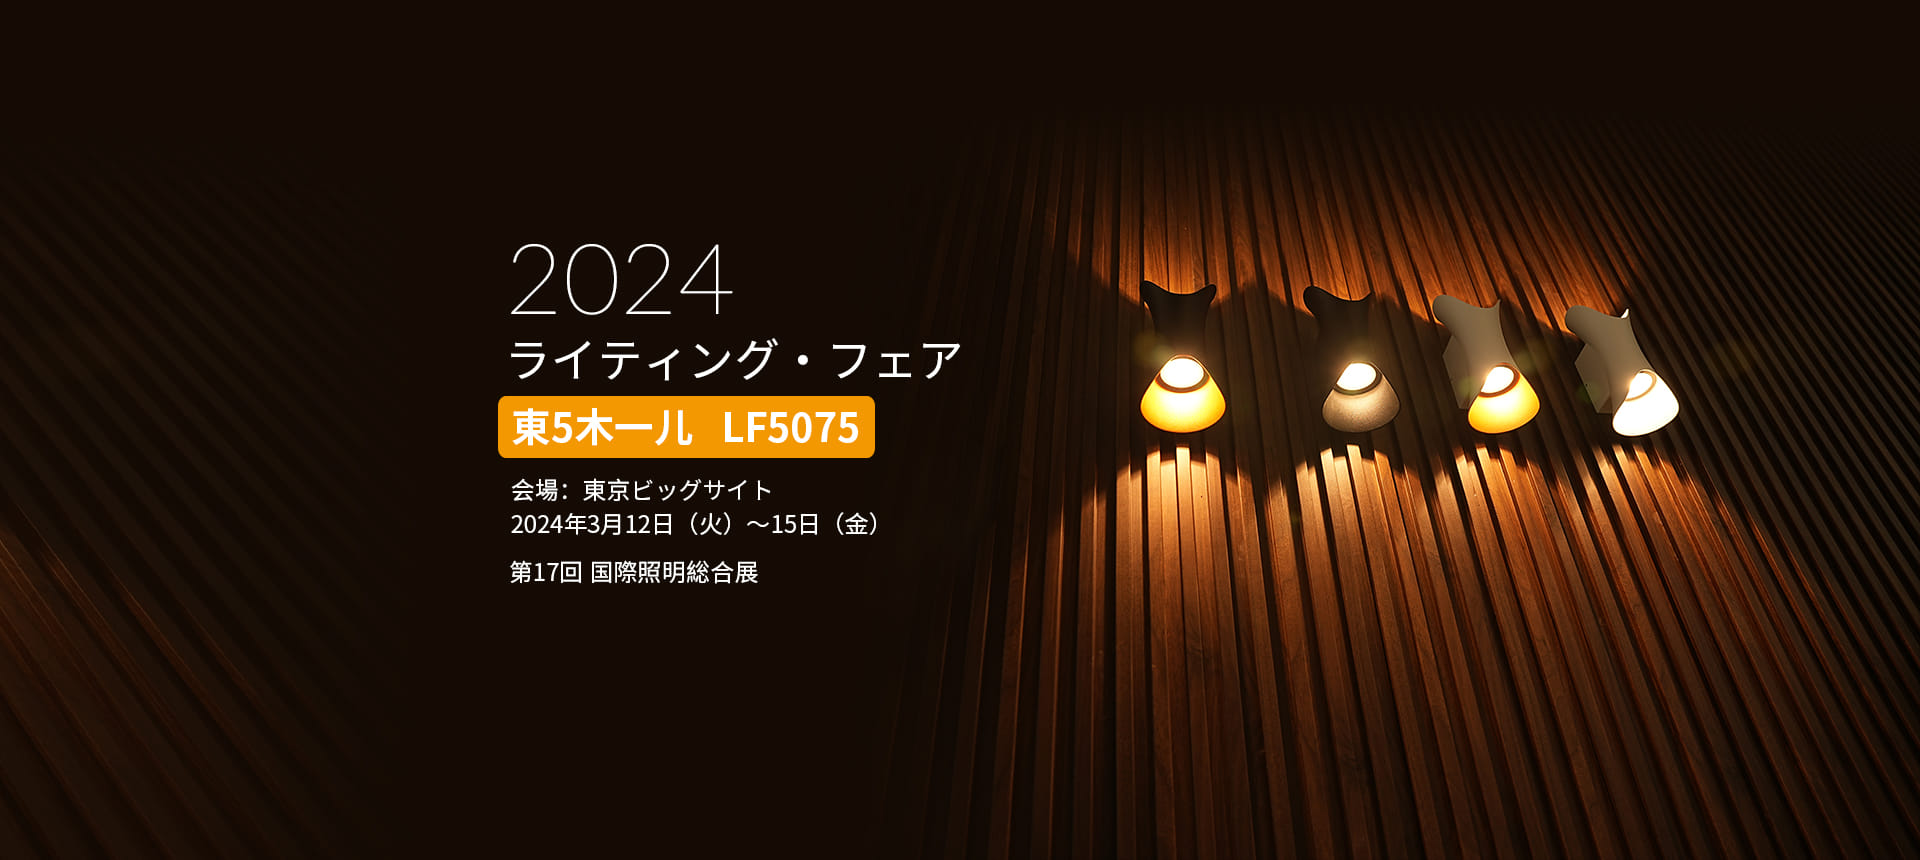 Tokyo International Lightning Exhibition